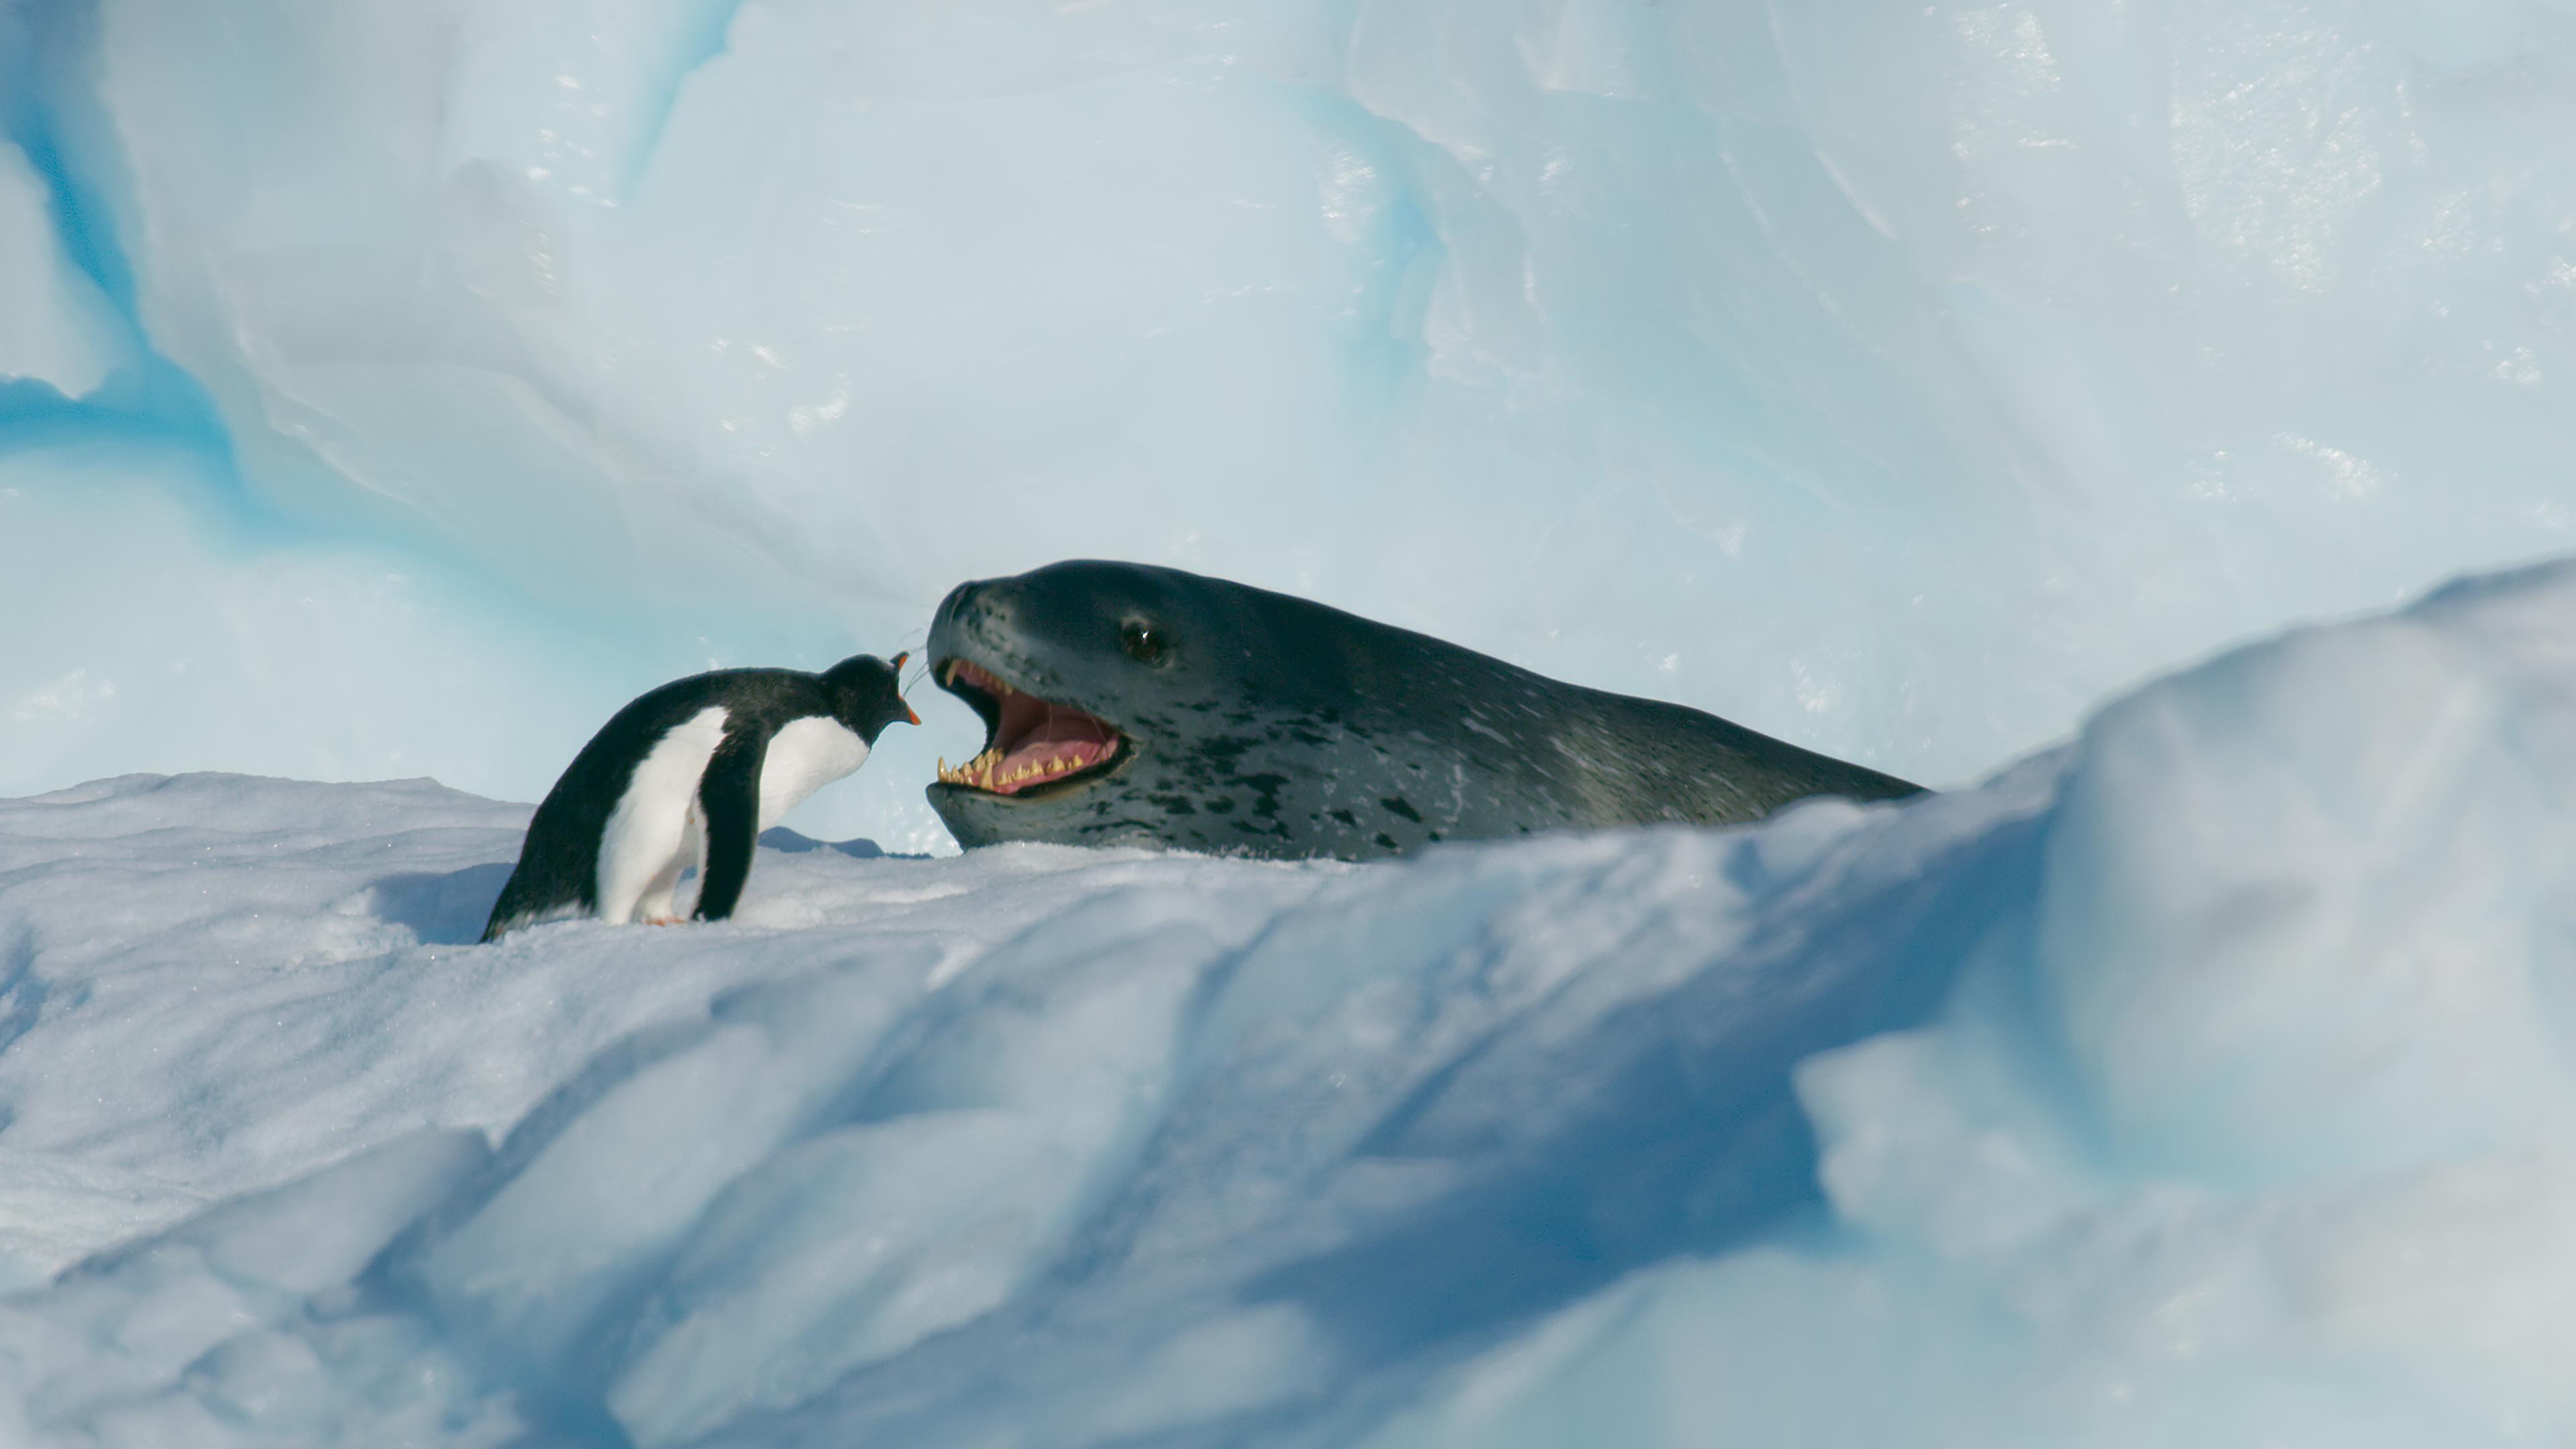 香港太空館天象廳由四月一日（星期一）起放映全新立體球幕電影《極南之地3D》，帶領觀眾探索南極洲。圖示南極洲海冰上的巴布亞企鵝及海豹。（圖片來源︰BBC NHU）